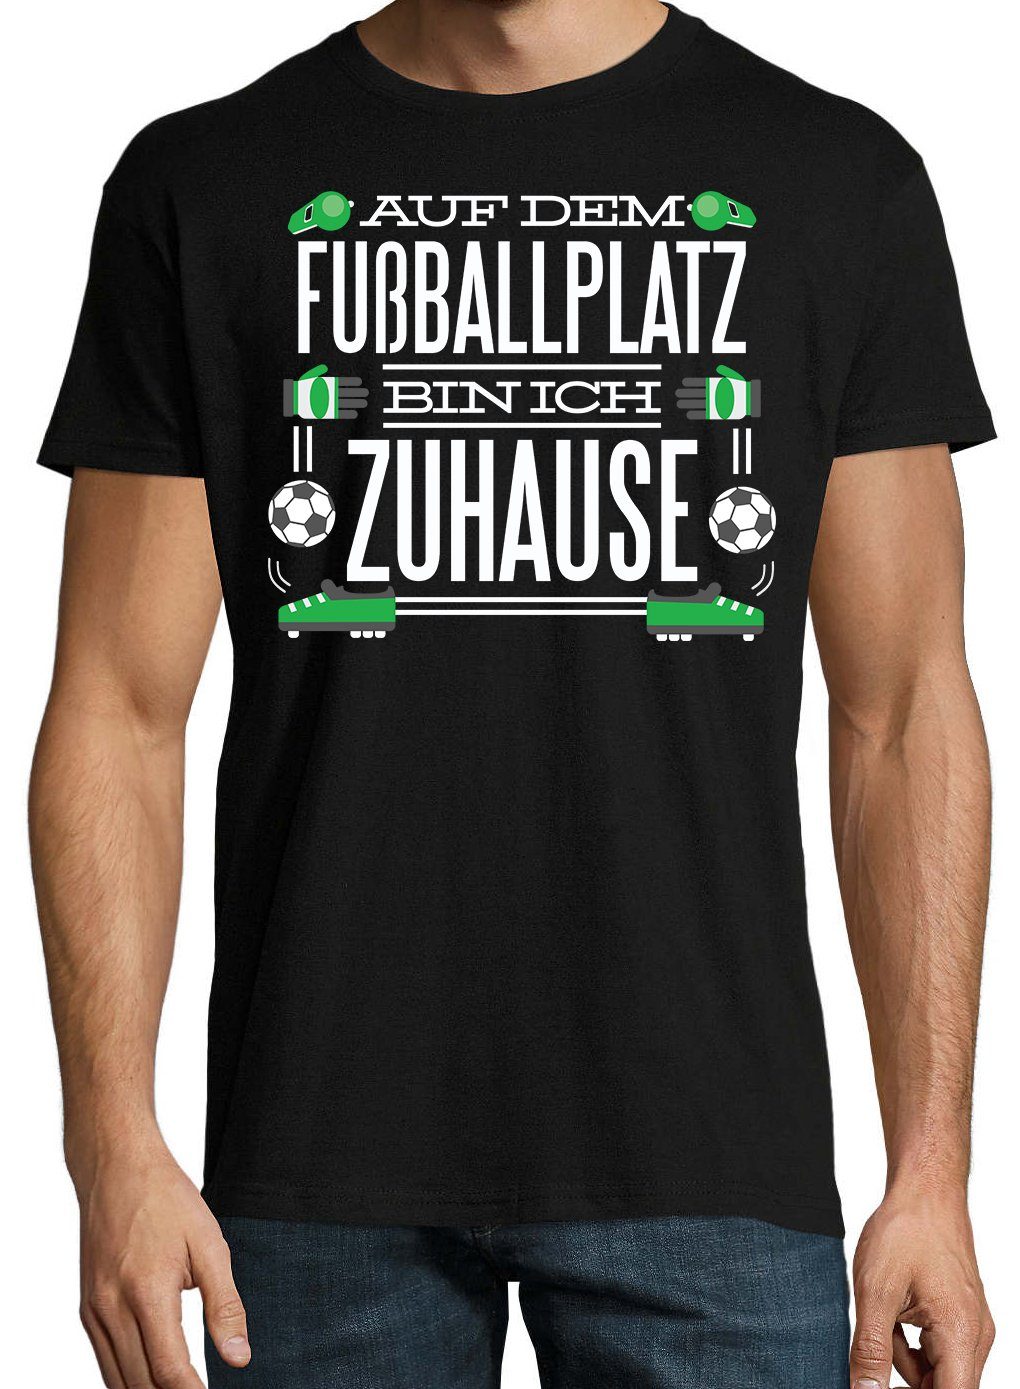 Youth Designz T-Shirt "Auf dem T-Shirt ich Zuhause" Herren Fußballplatz bin mit lustigem Spruch Schwarz